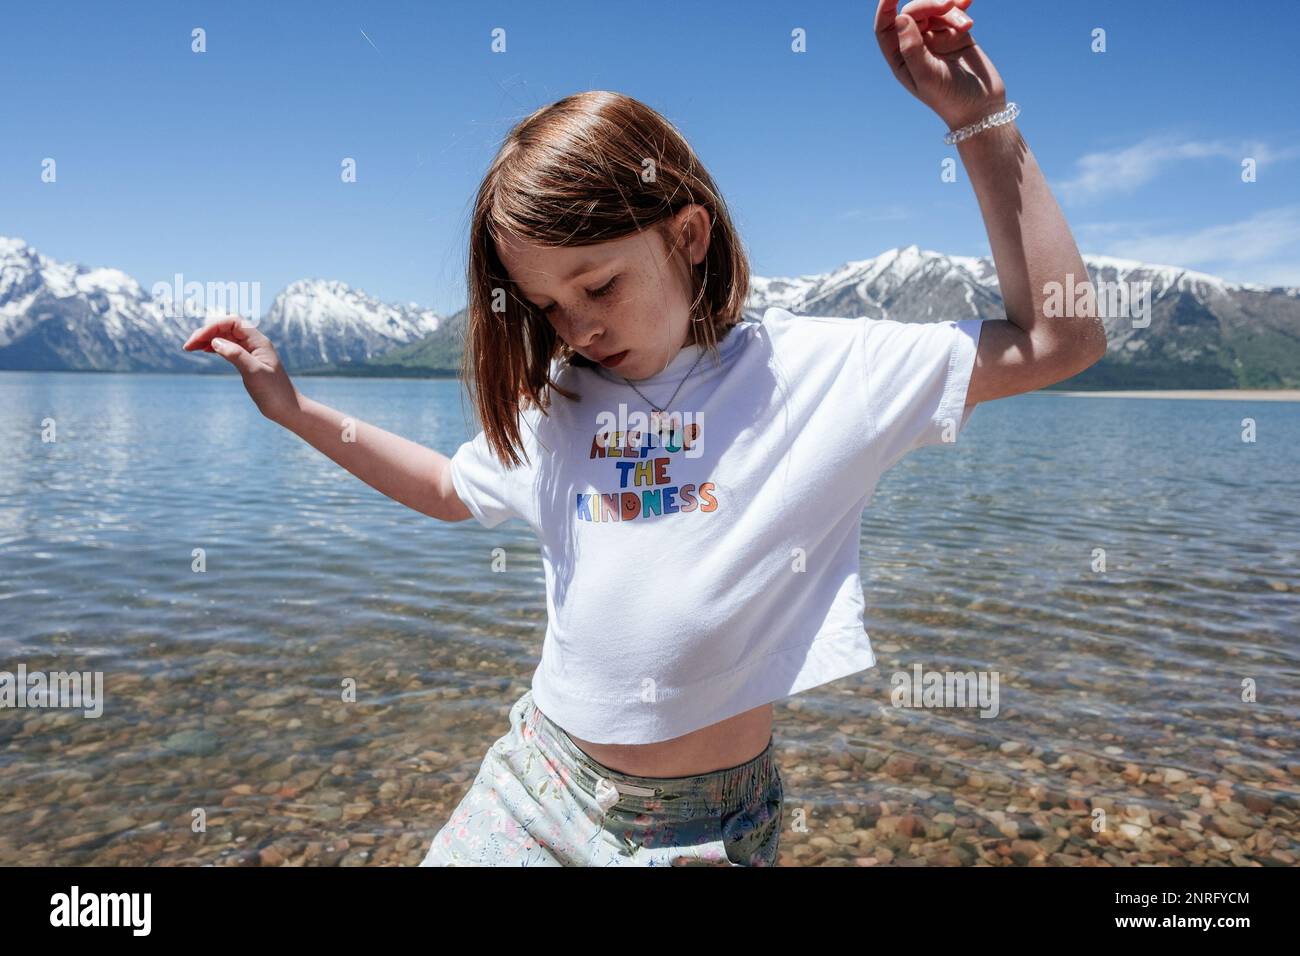 Une jeune fille dansant sur le bord du lac, près des montagnes enneigées Banque D'Images